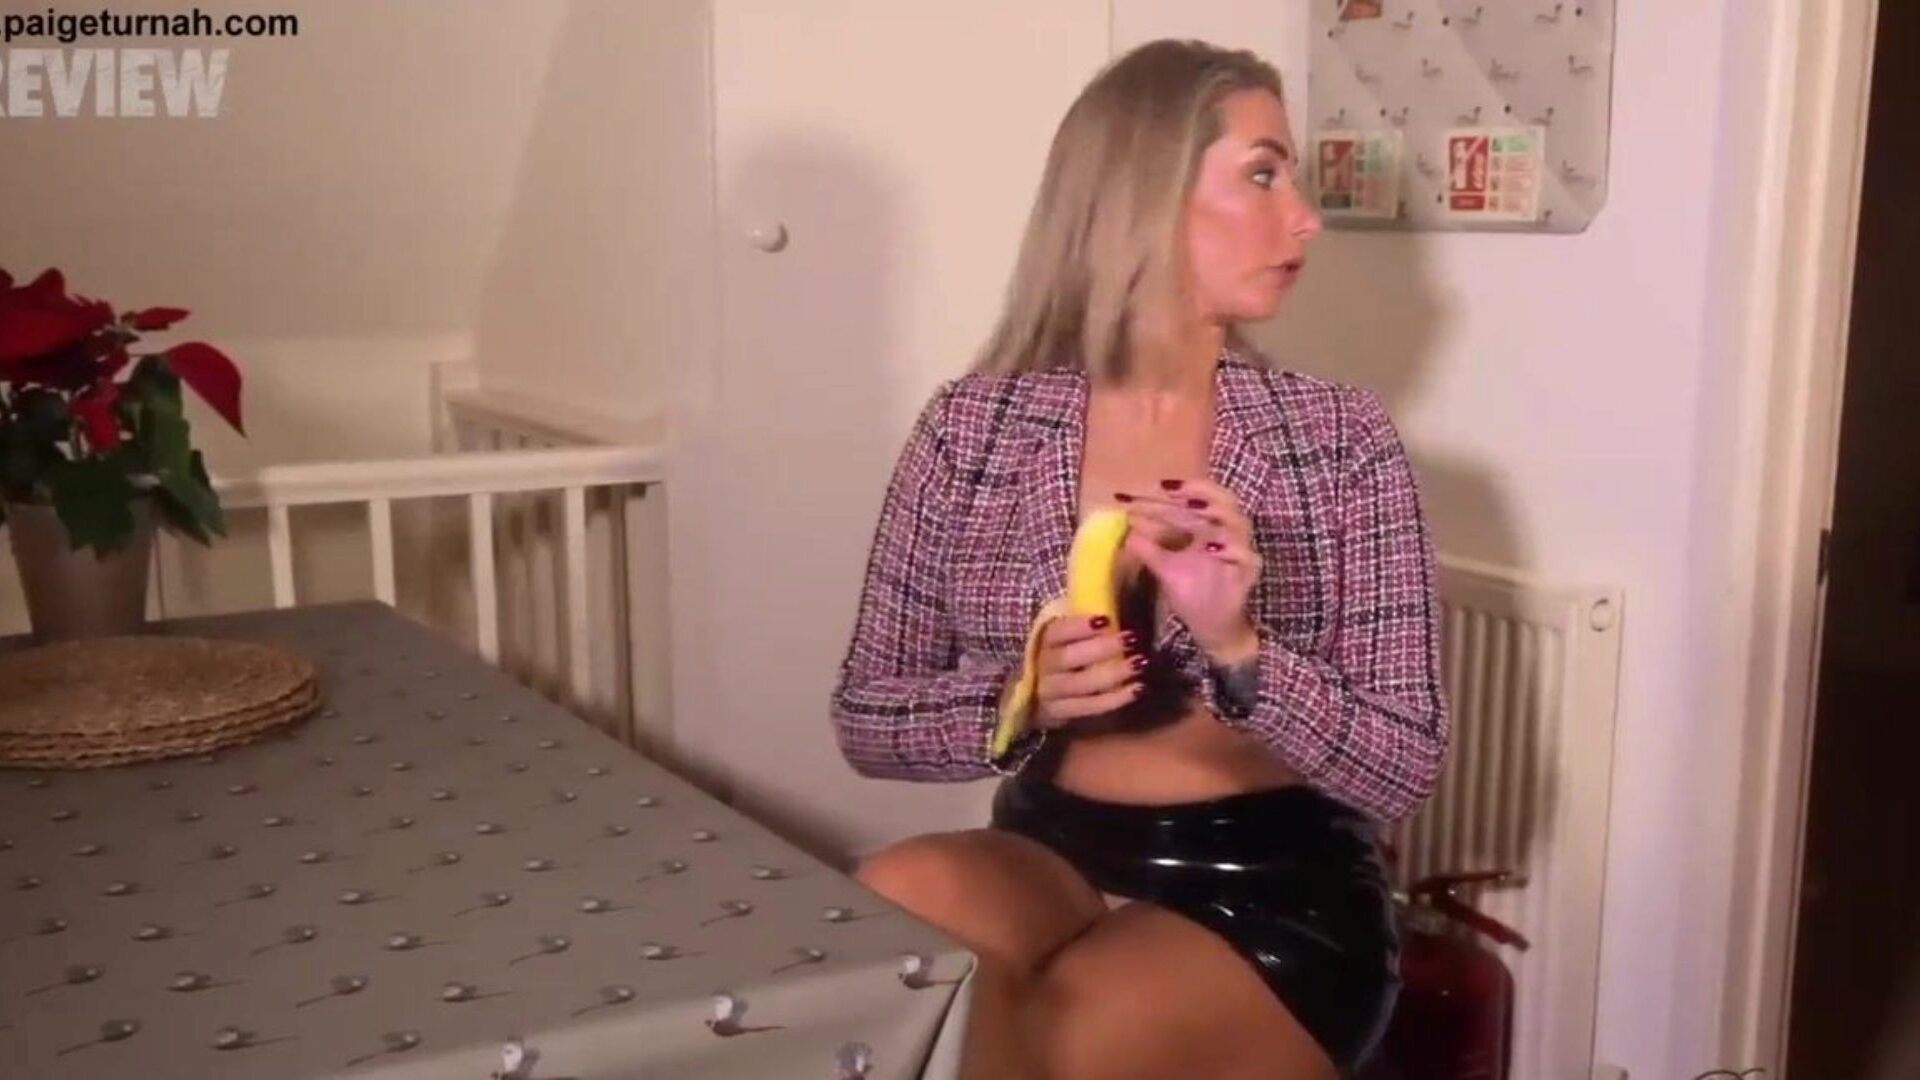 Das britische Babe Paige Turnah ist in der Mittagspause und neckt dich mit ihrem Bananen-Oral-Service und den abgedroschenen Abflüssen